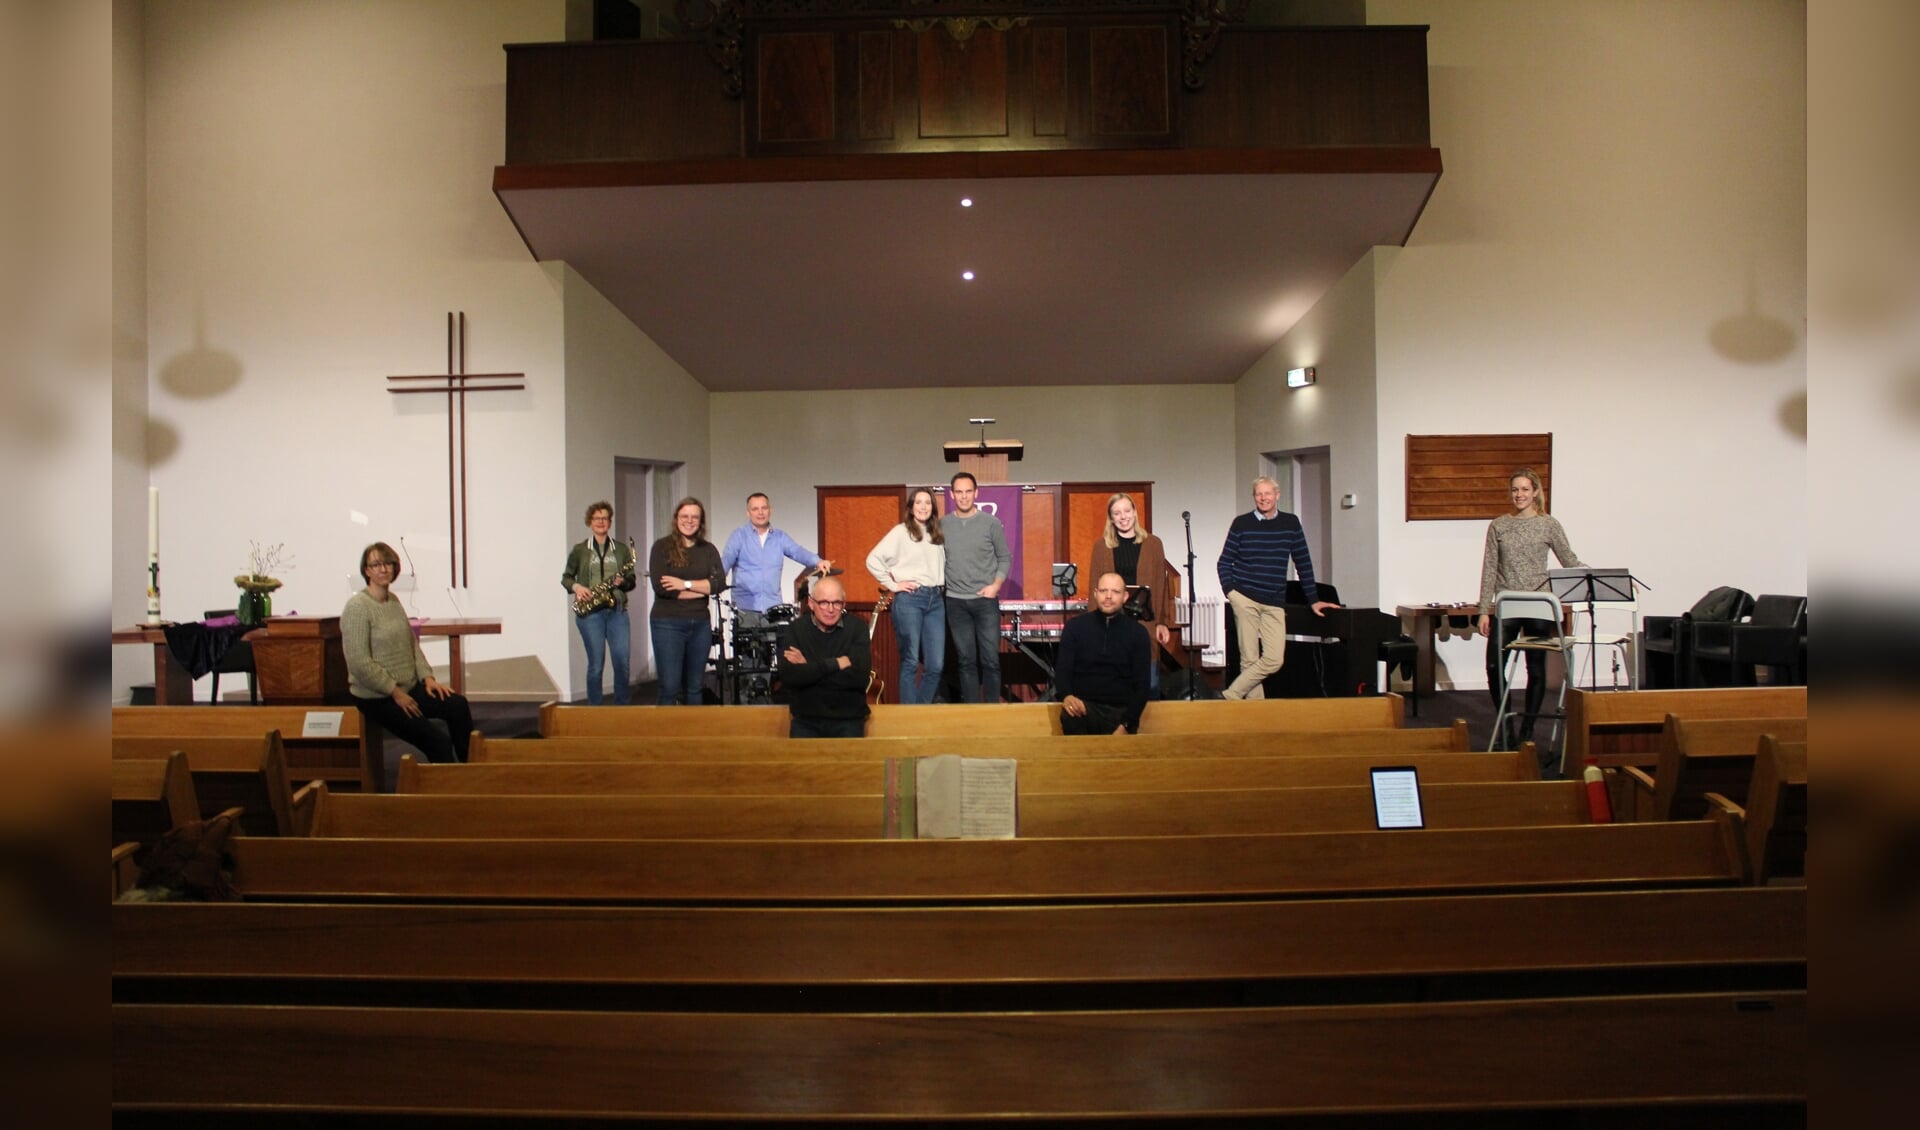 Repetitie voor de Christmas Passion 2.0 in de Gereformeerde Kerk in Zwartebroek.